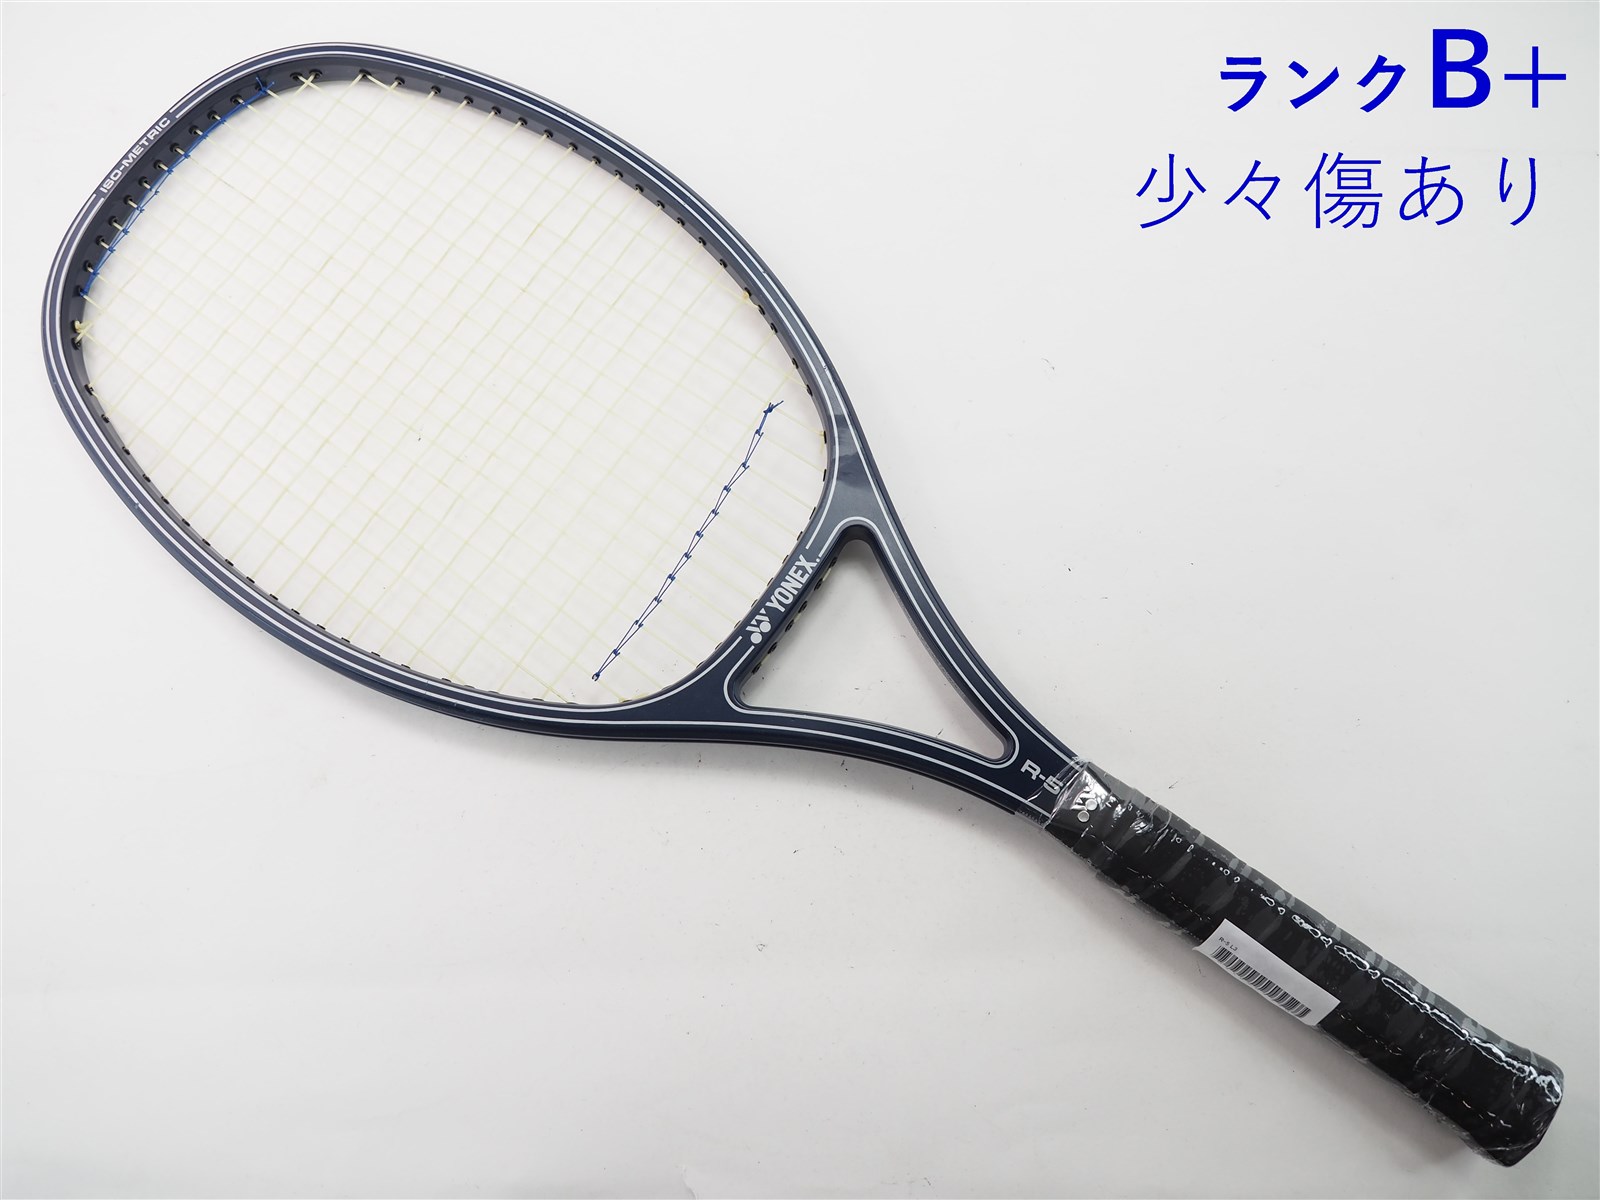 中古】ヨネックス R-5YONEX R-5(L3)【中古 テニスラケット】【送料無料 